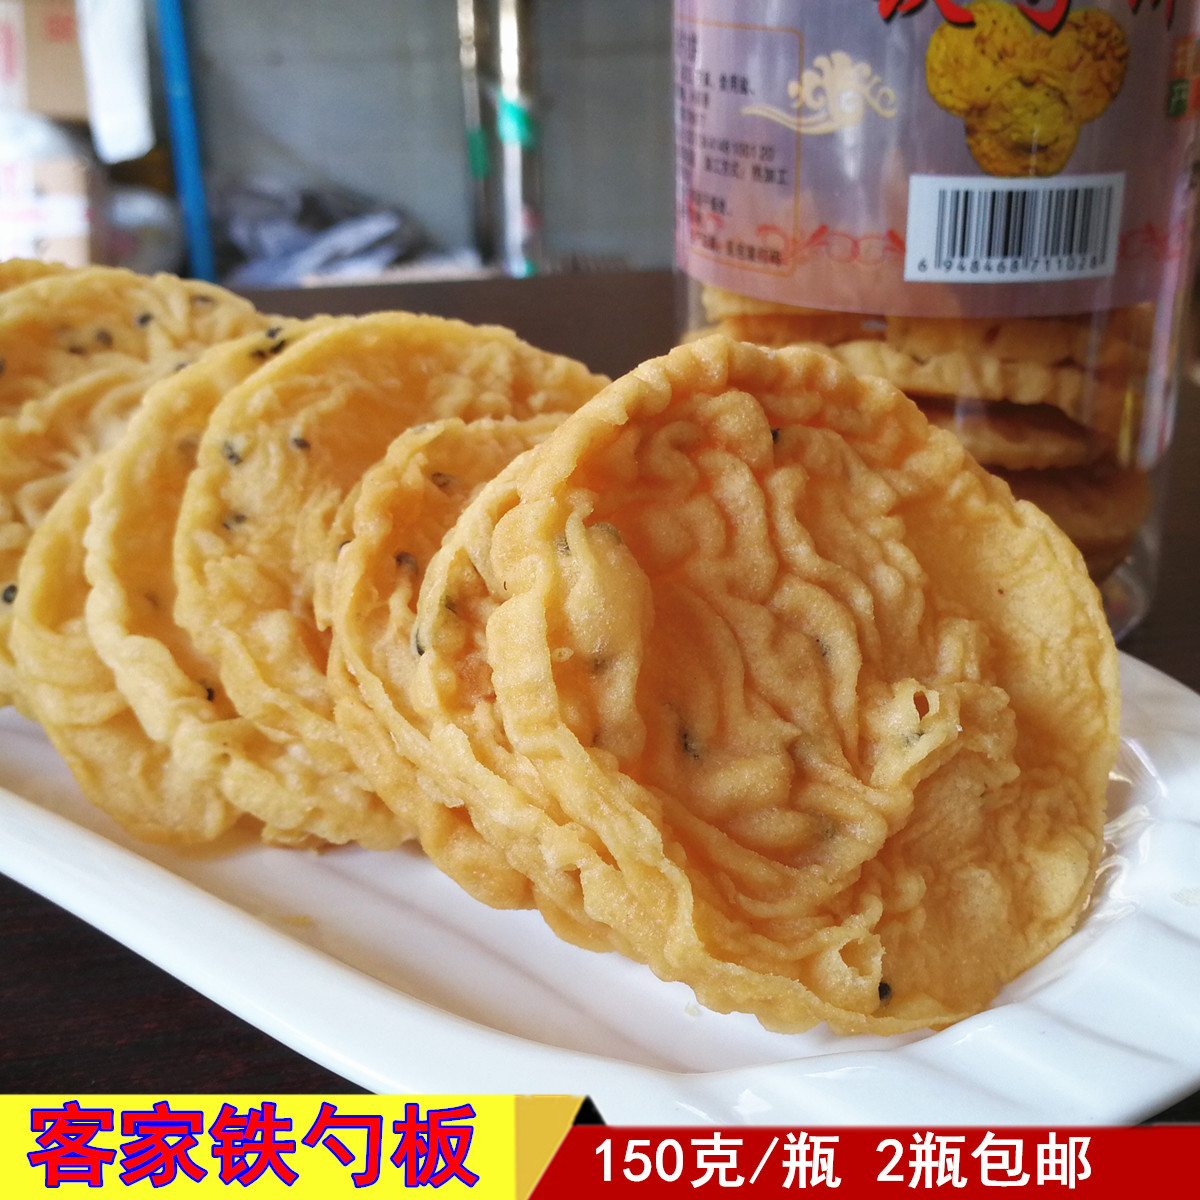 铁勺饼黄豆 铁勺哒月亮耙休闲小吃零食饼干 广东河源客家特产